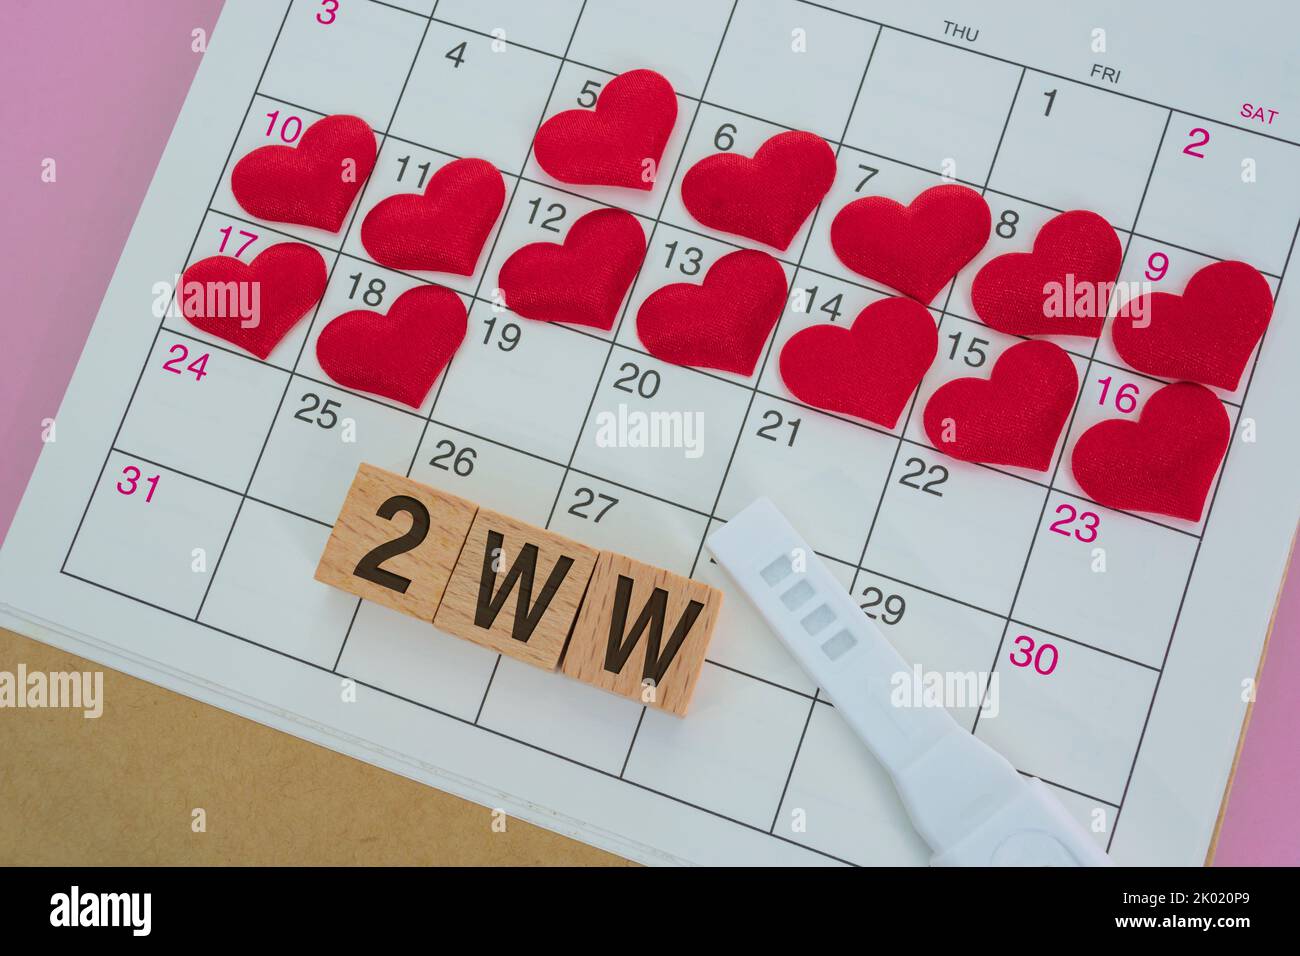 2WW mots sur bloc de bois avec coeur rouge sur le calendrier. Survivre les deux semaines attendez quand vous essayez de concevoir. Banque D'Images